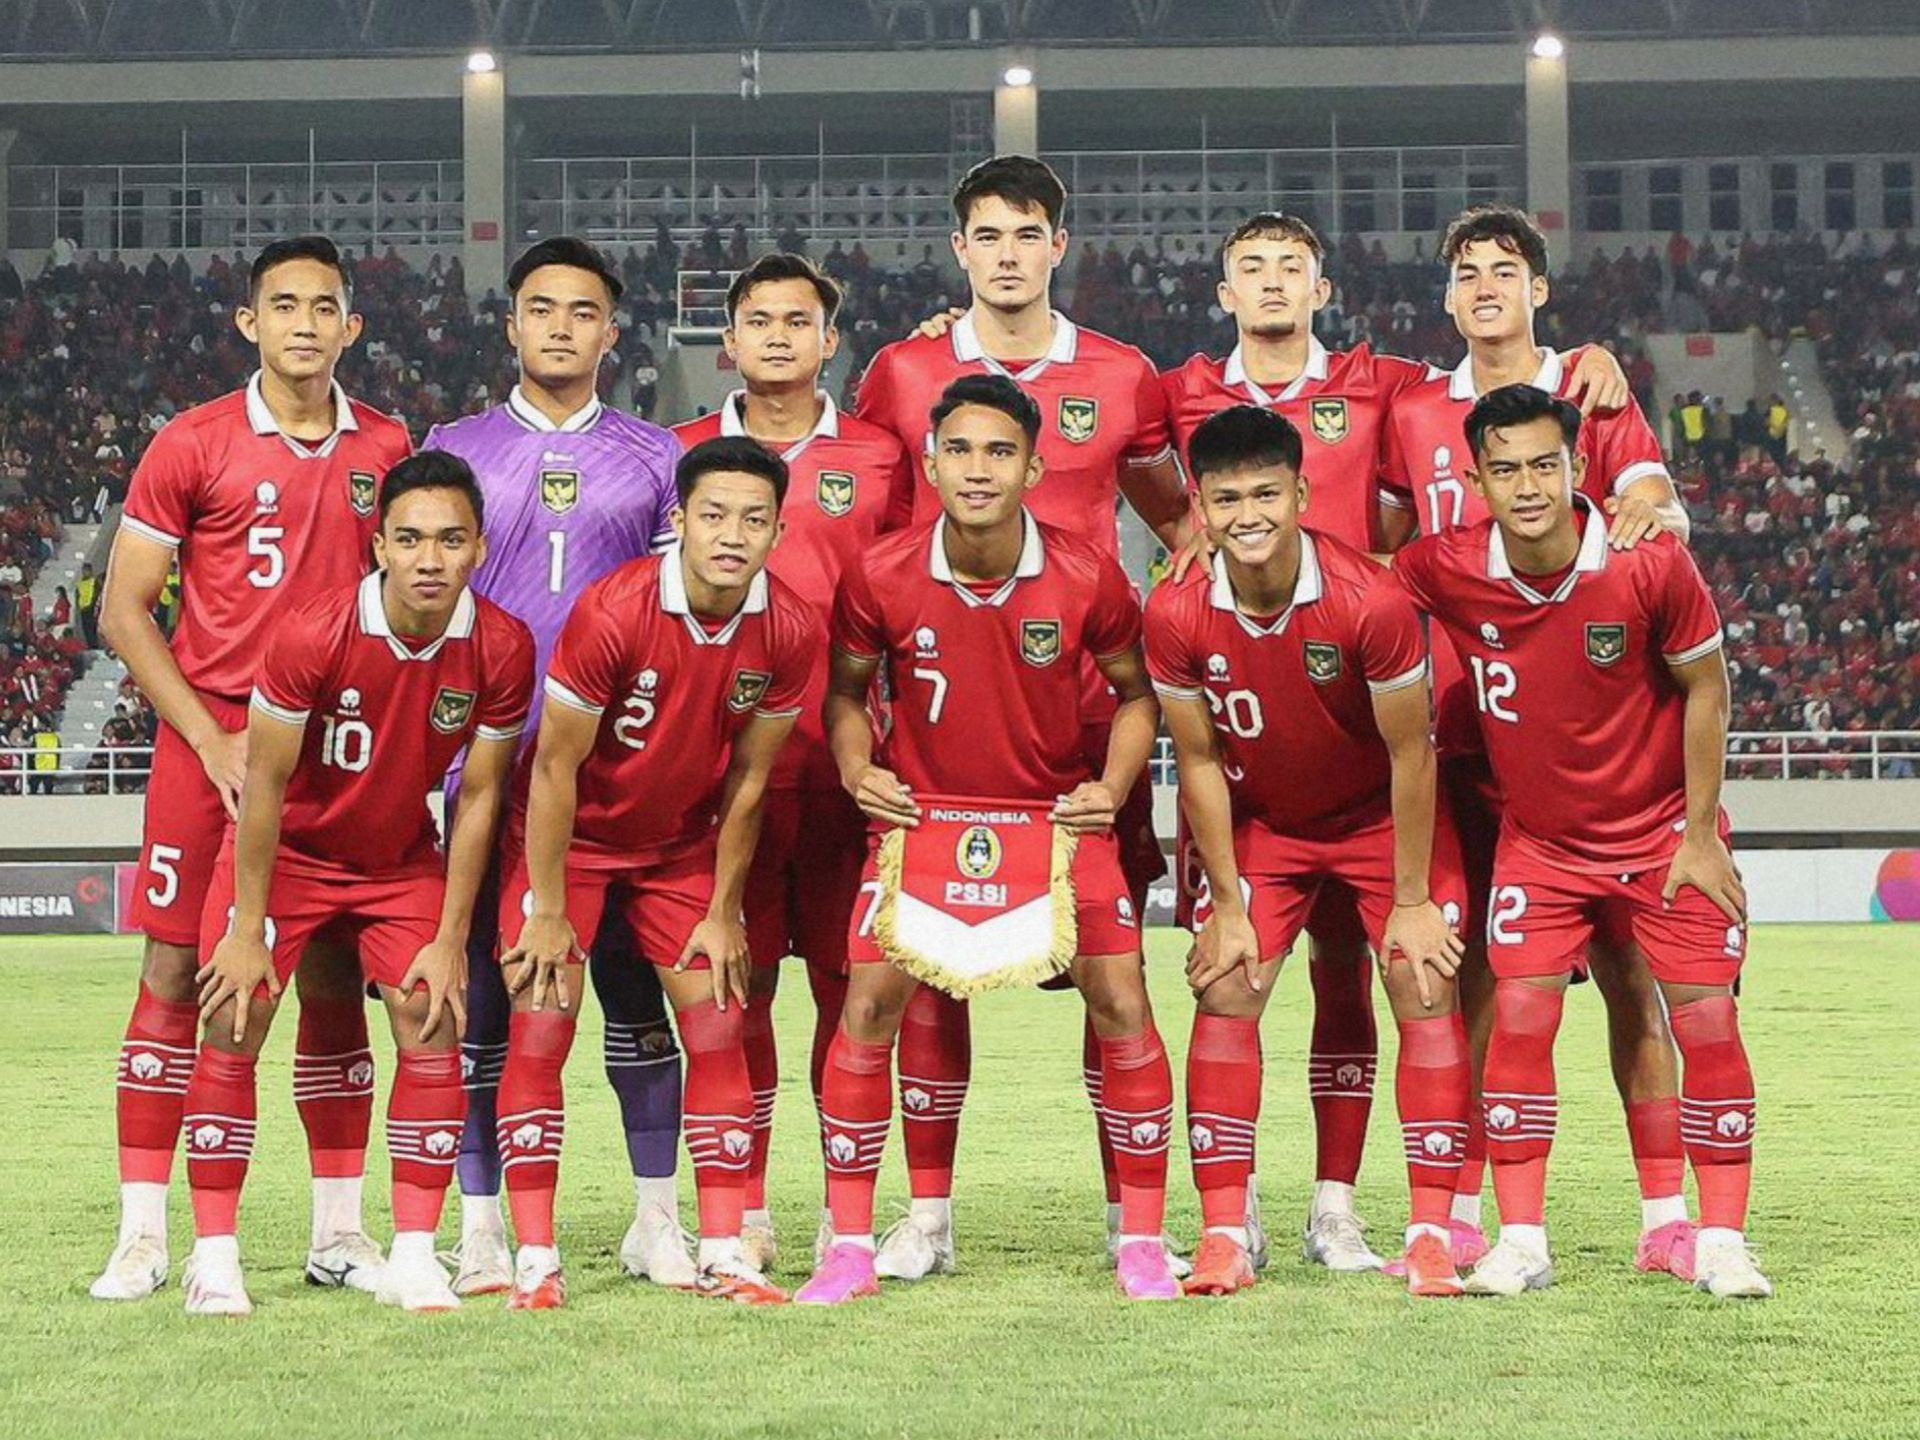 Pertandingan Timnas Indonesia Vs Kirgistan akan Berlangsung 19 September, Live Di RCTI